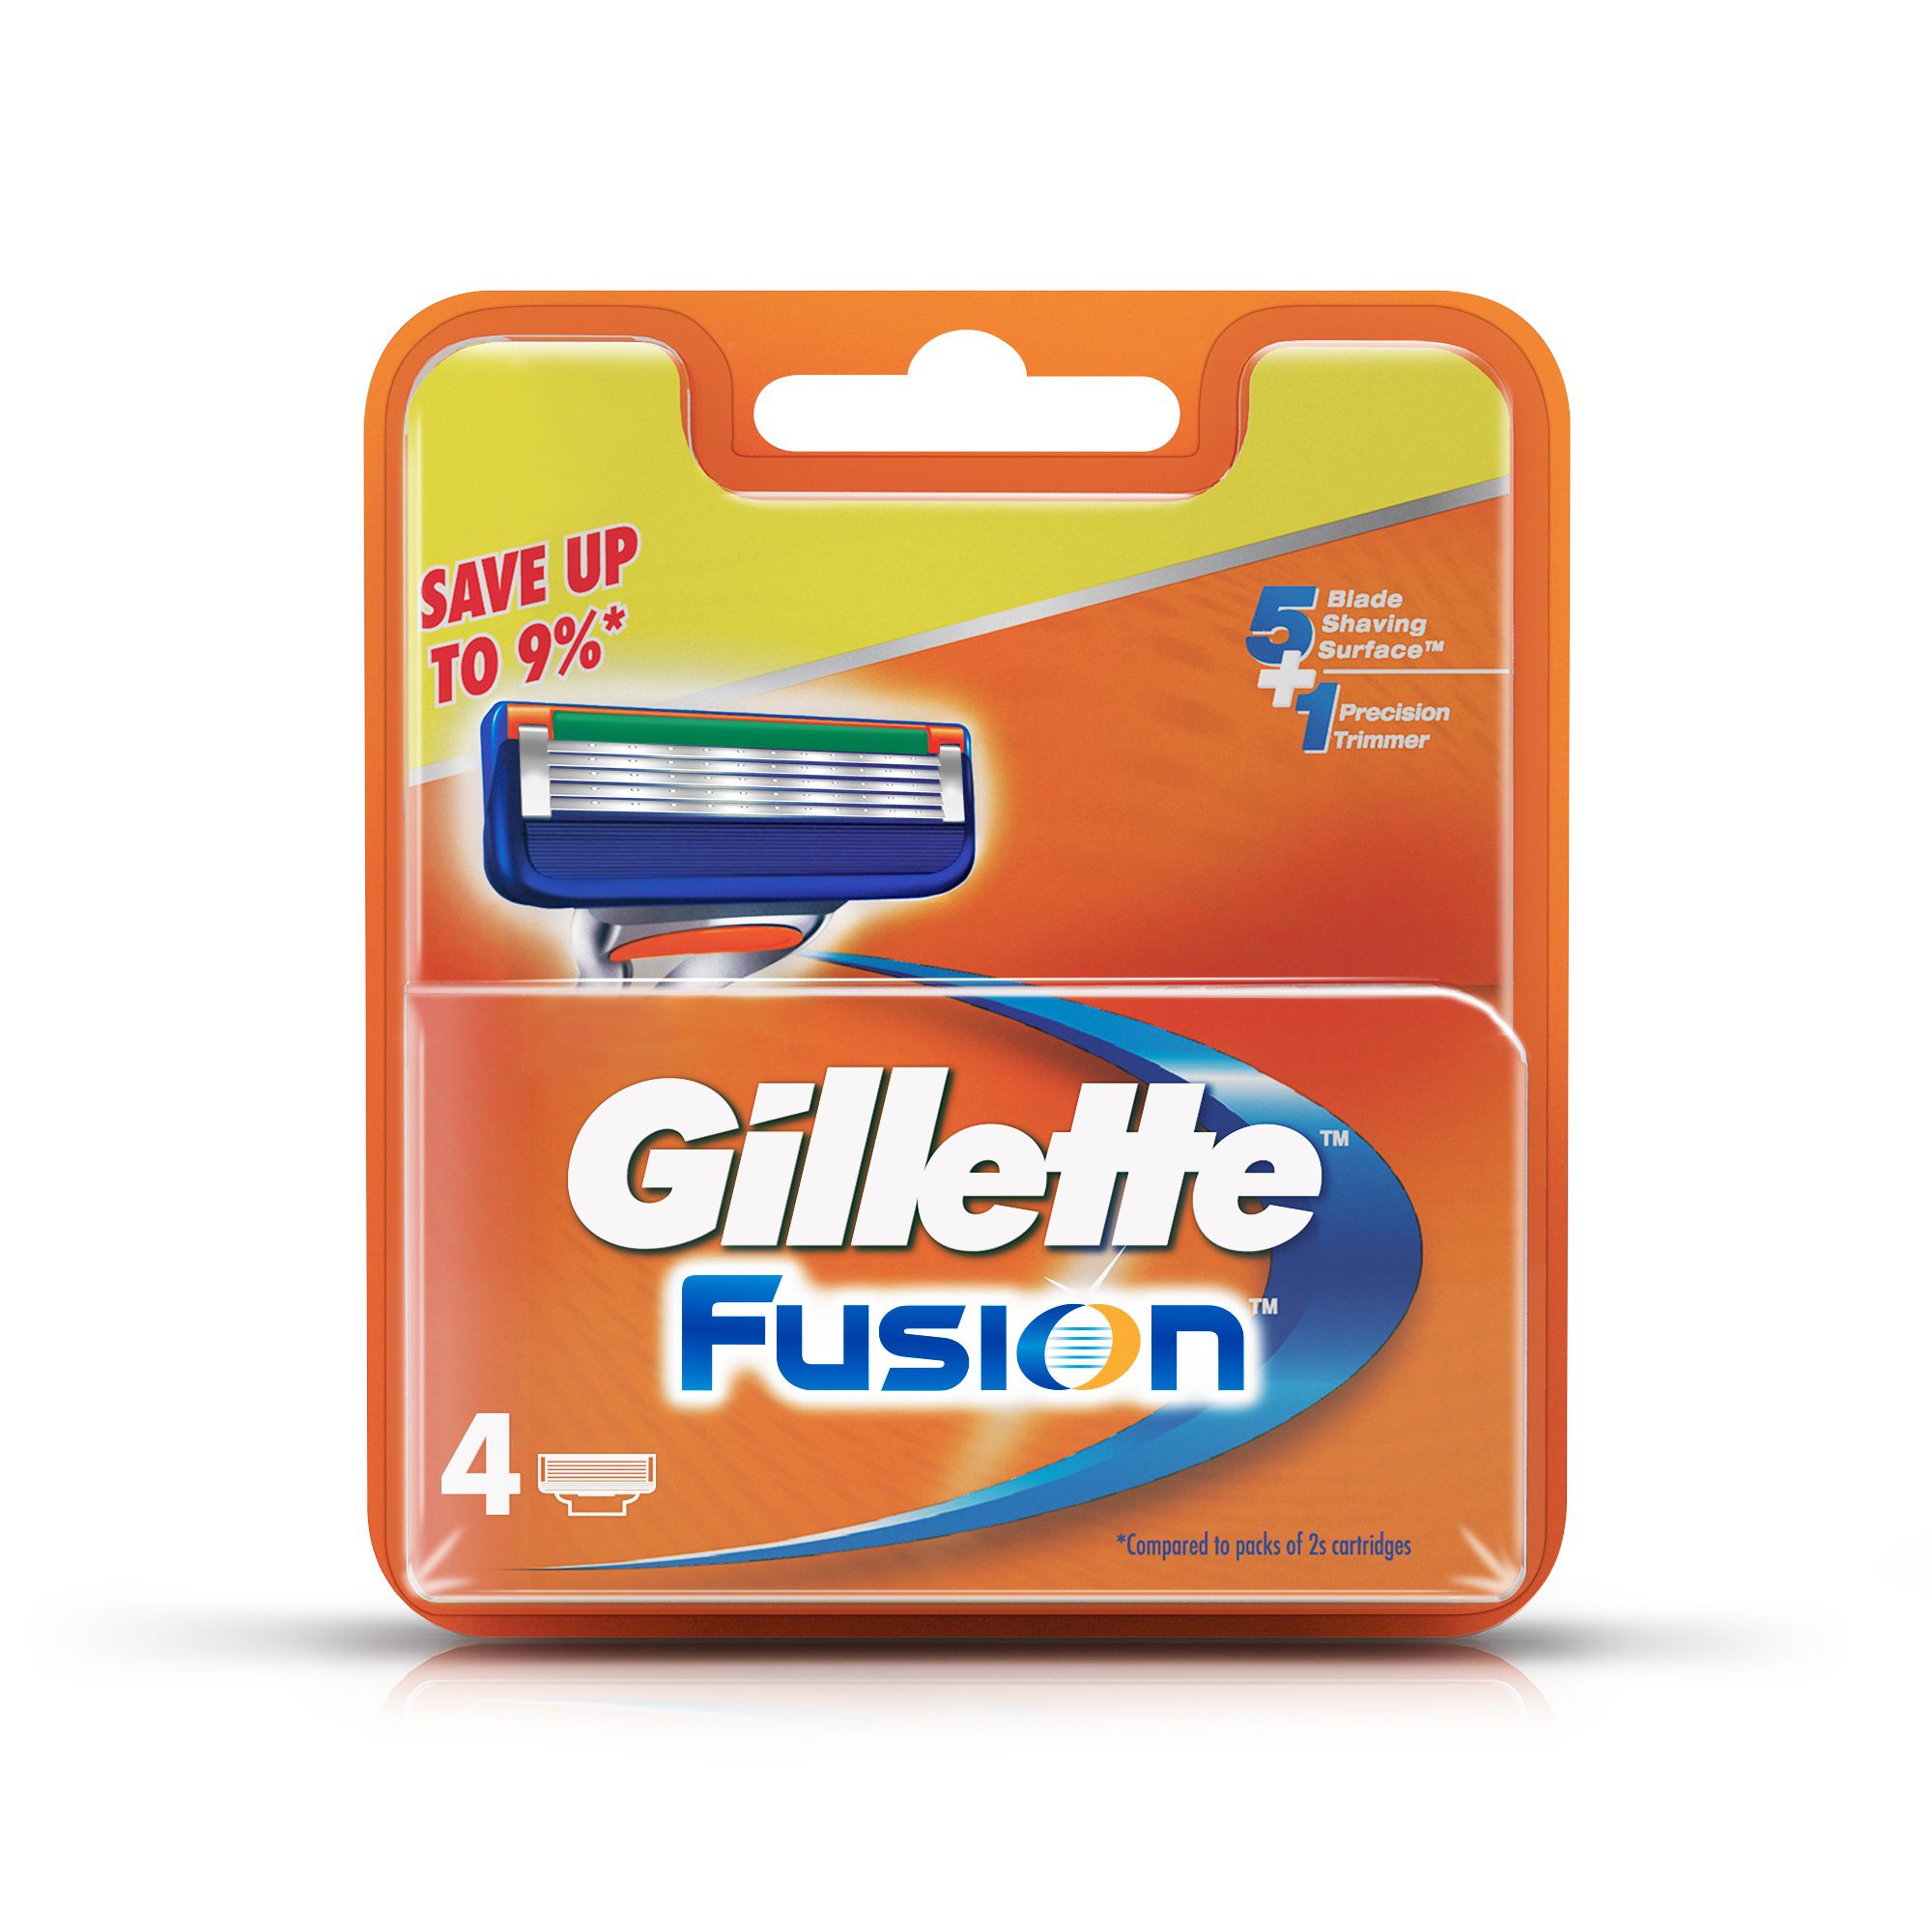 Gillette Fusion Manual Shaving Razor Blades Cartridge 4s Pack Buy Gillette Fusion Manual